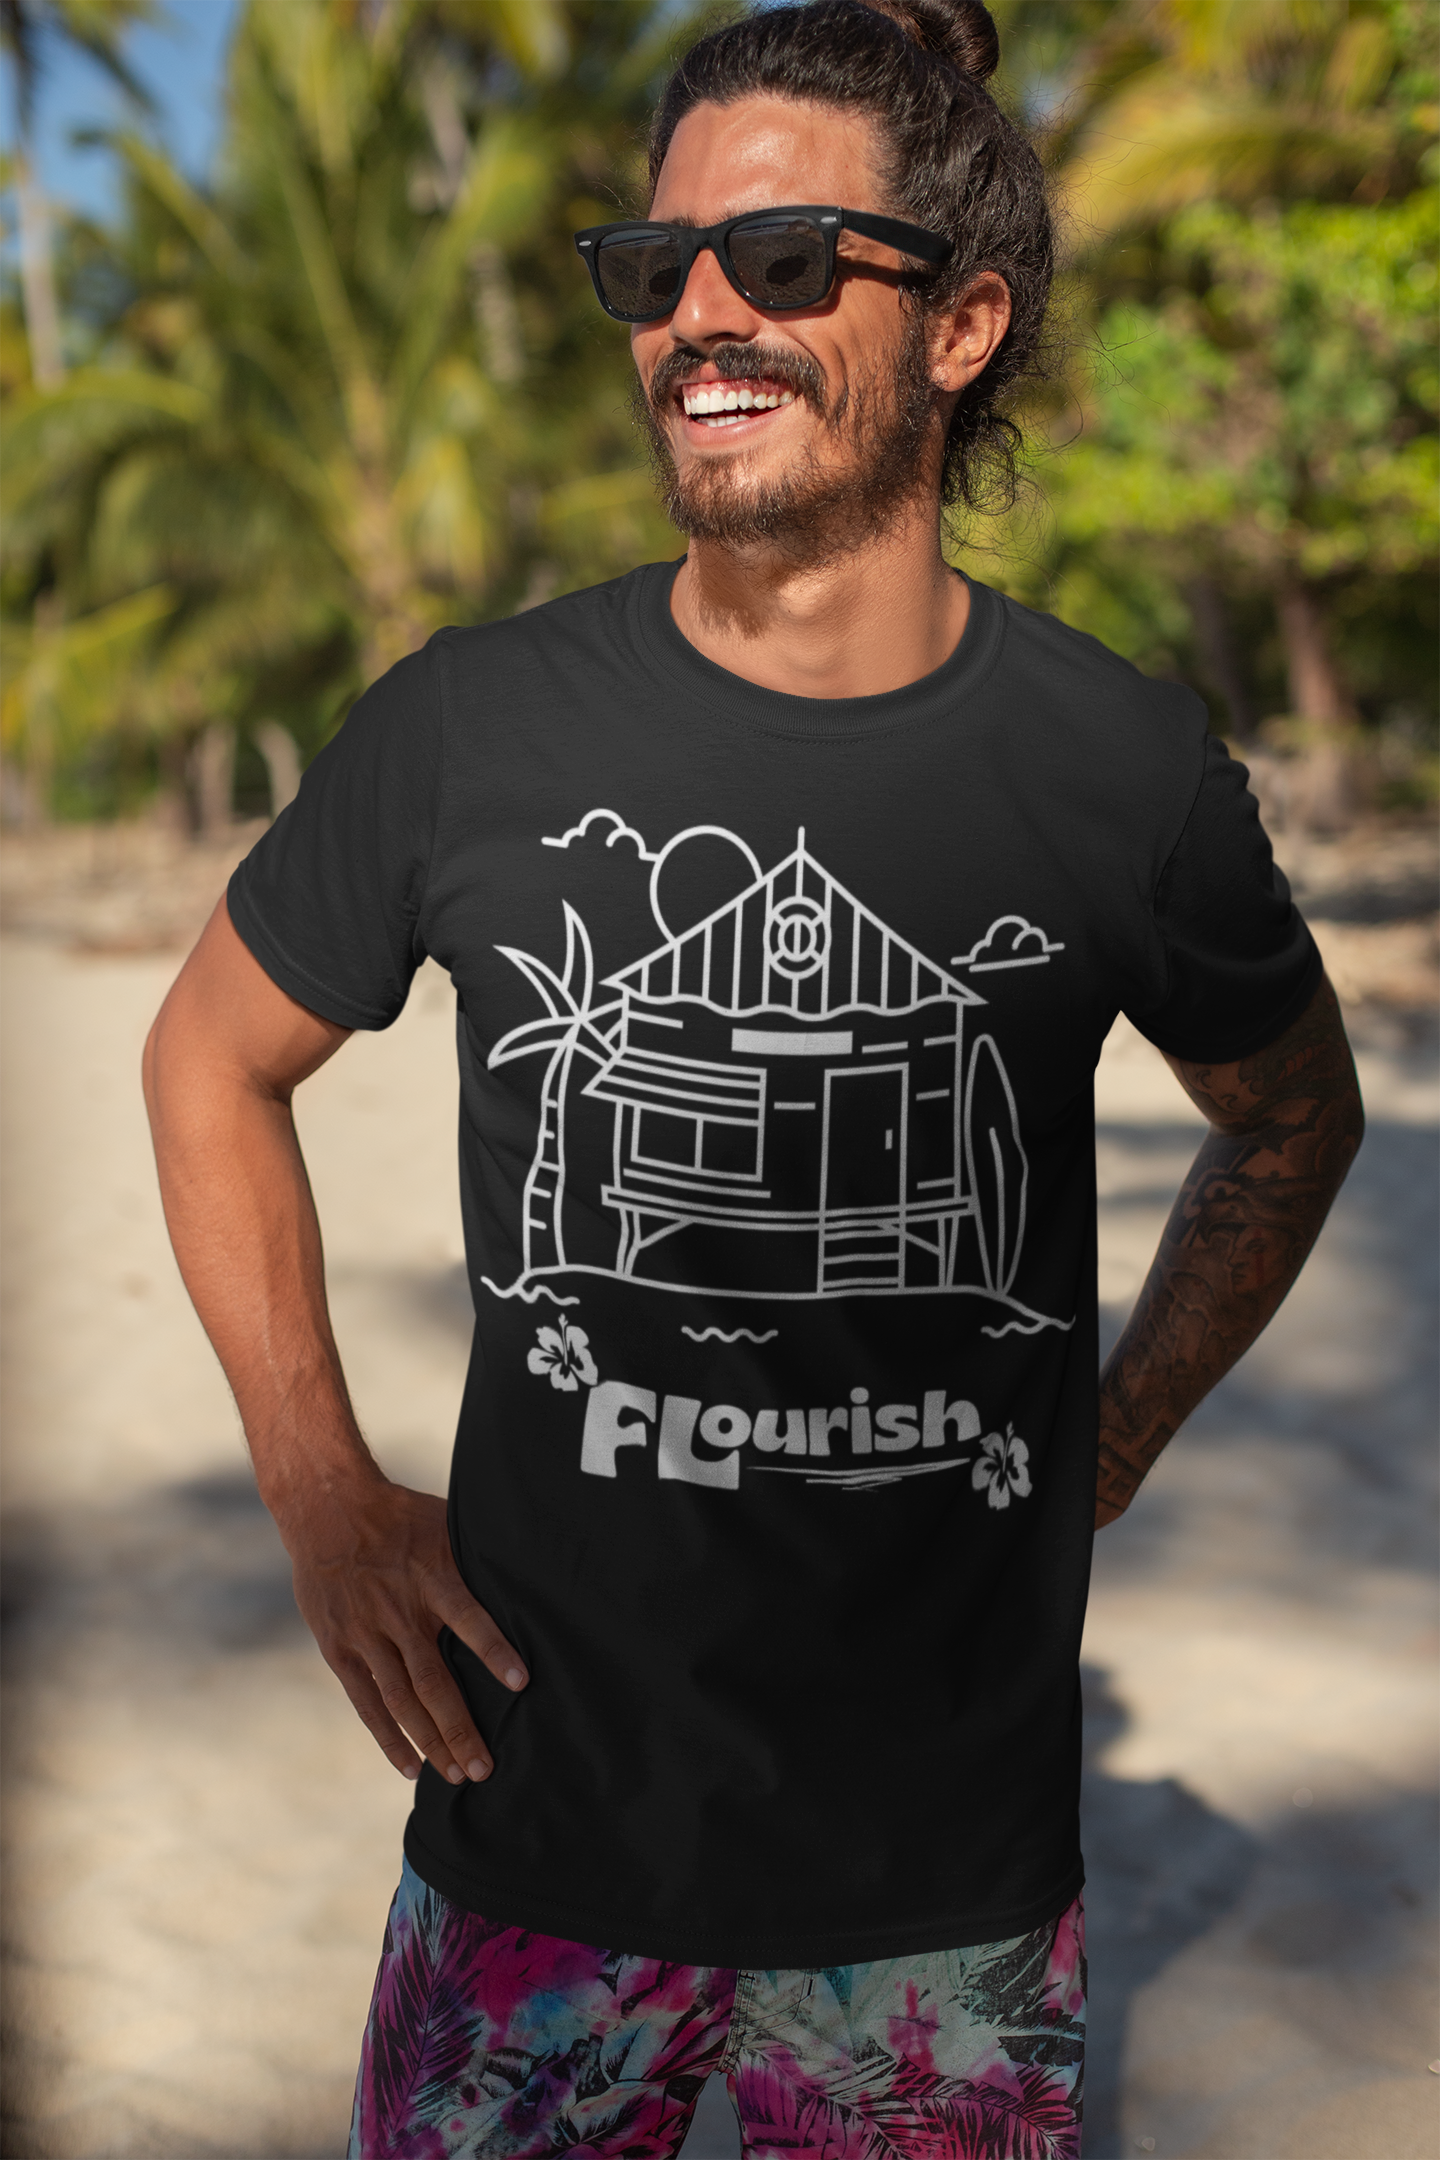 Beach House - Flourish Clothing Co